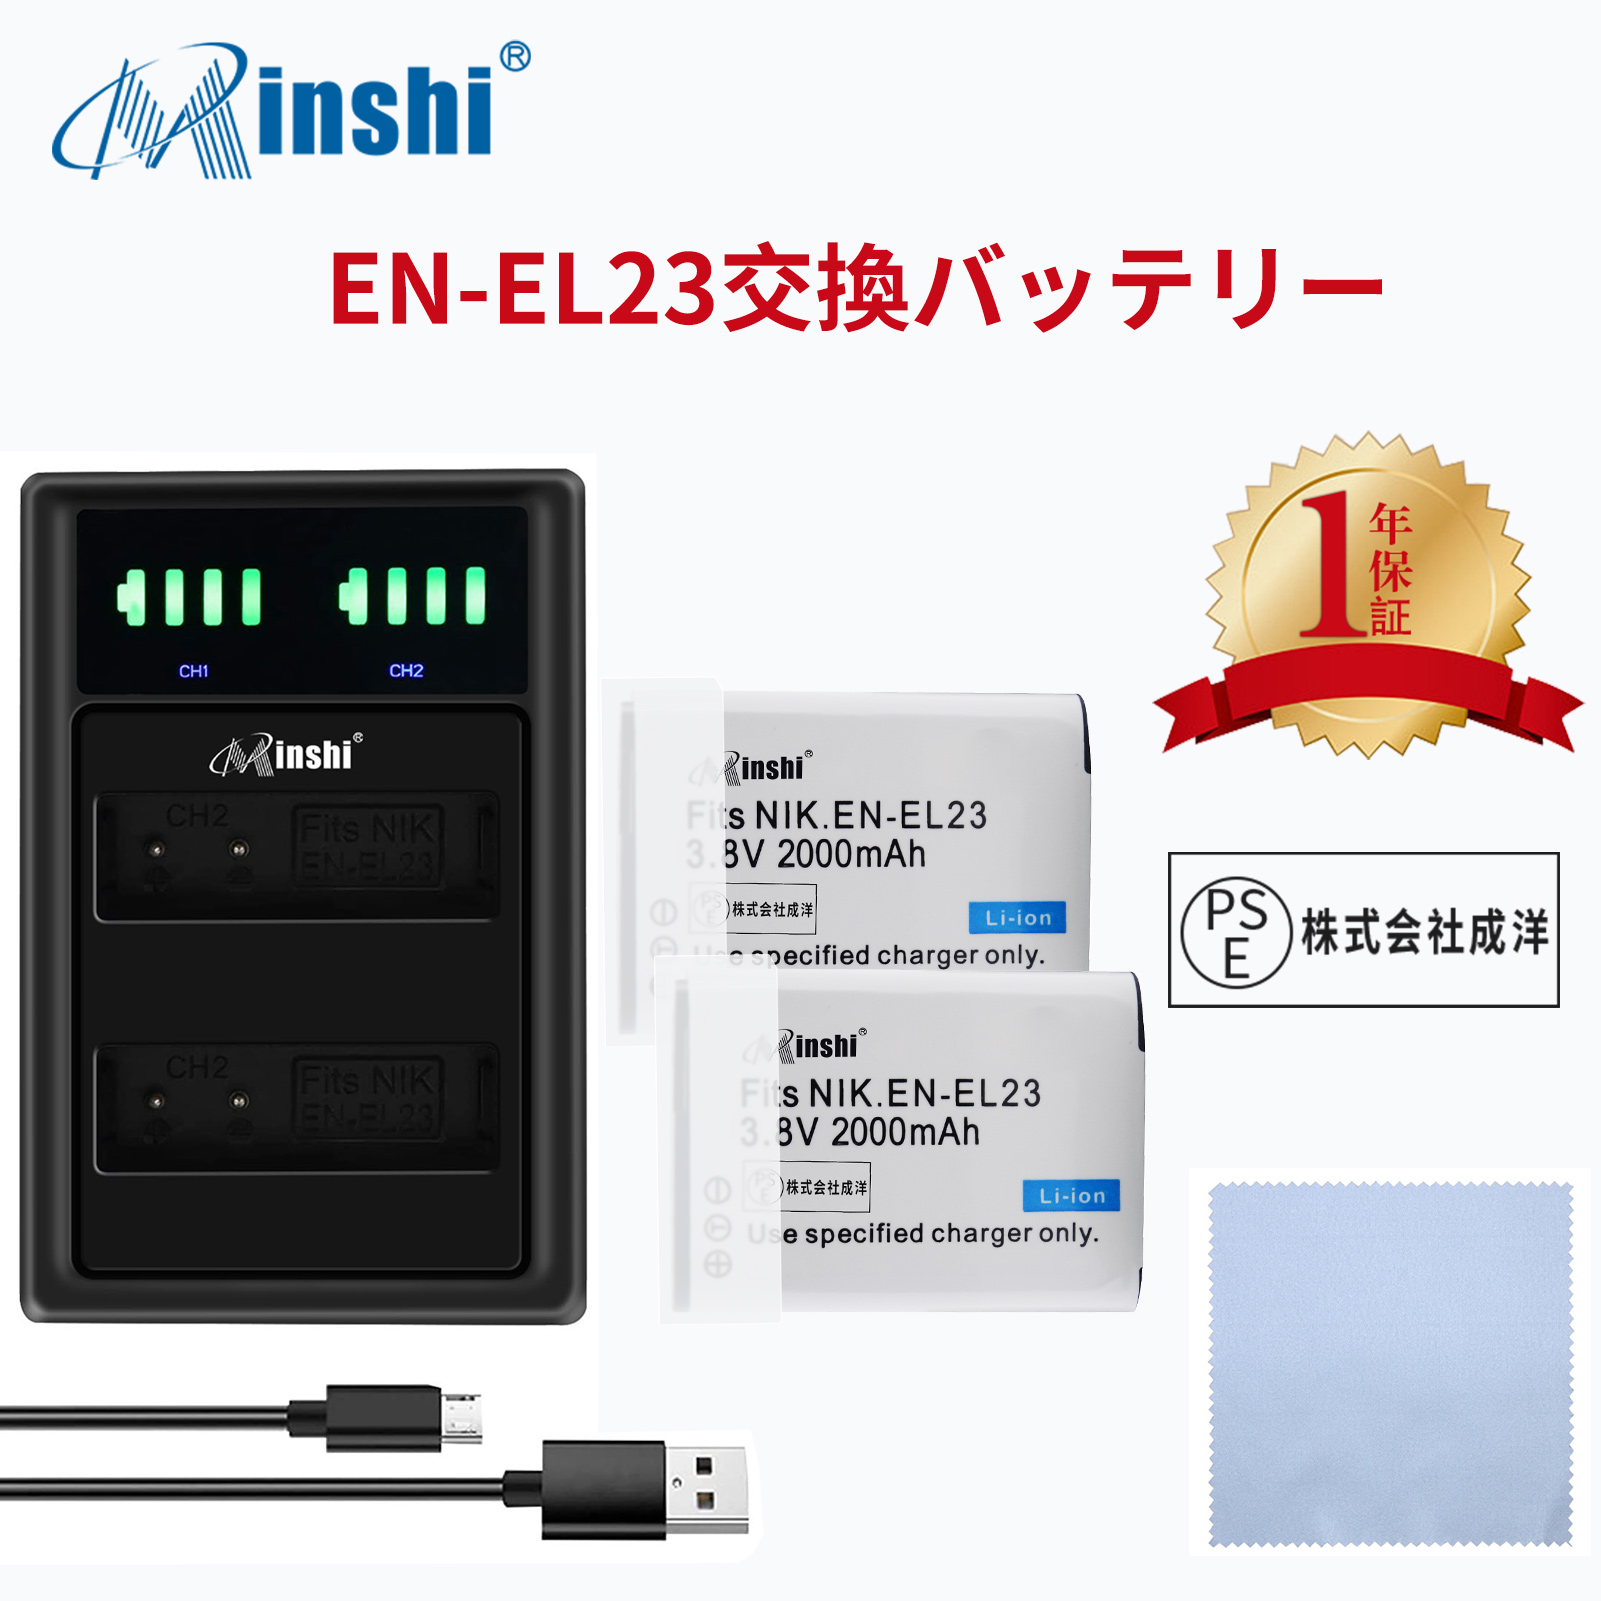 【セット】 minshi NIKON  P600  対応  互換バッテリー 2000mAh PSE認定済 高品質 EN-EL23 交換用バッテリー【2個】